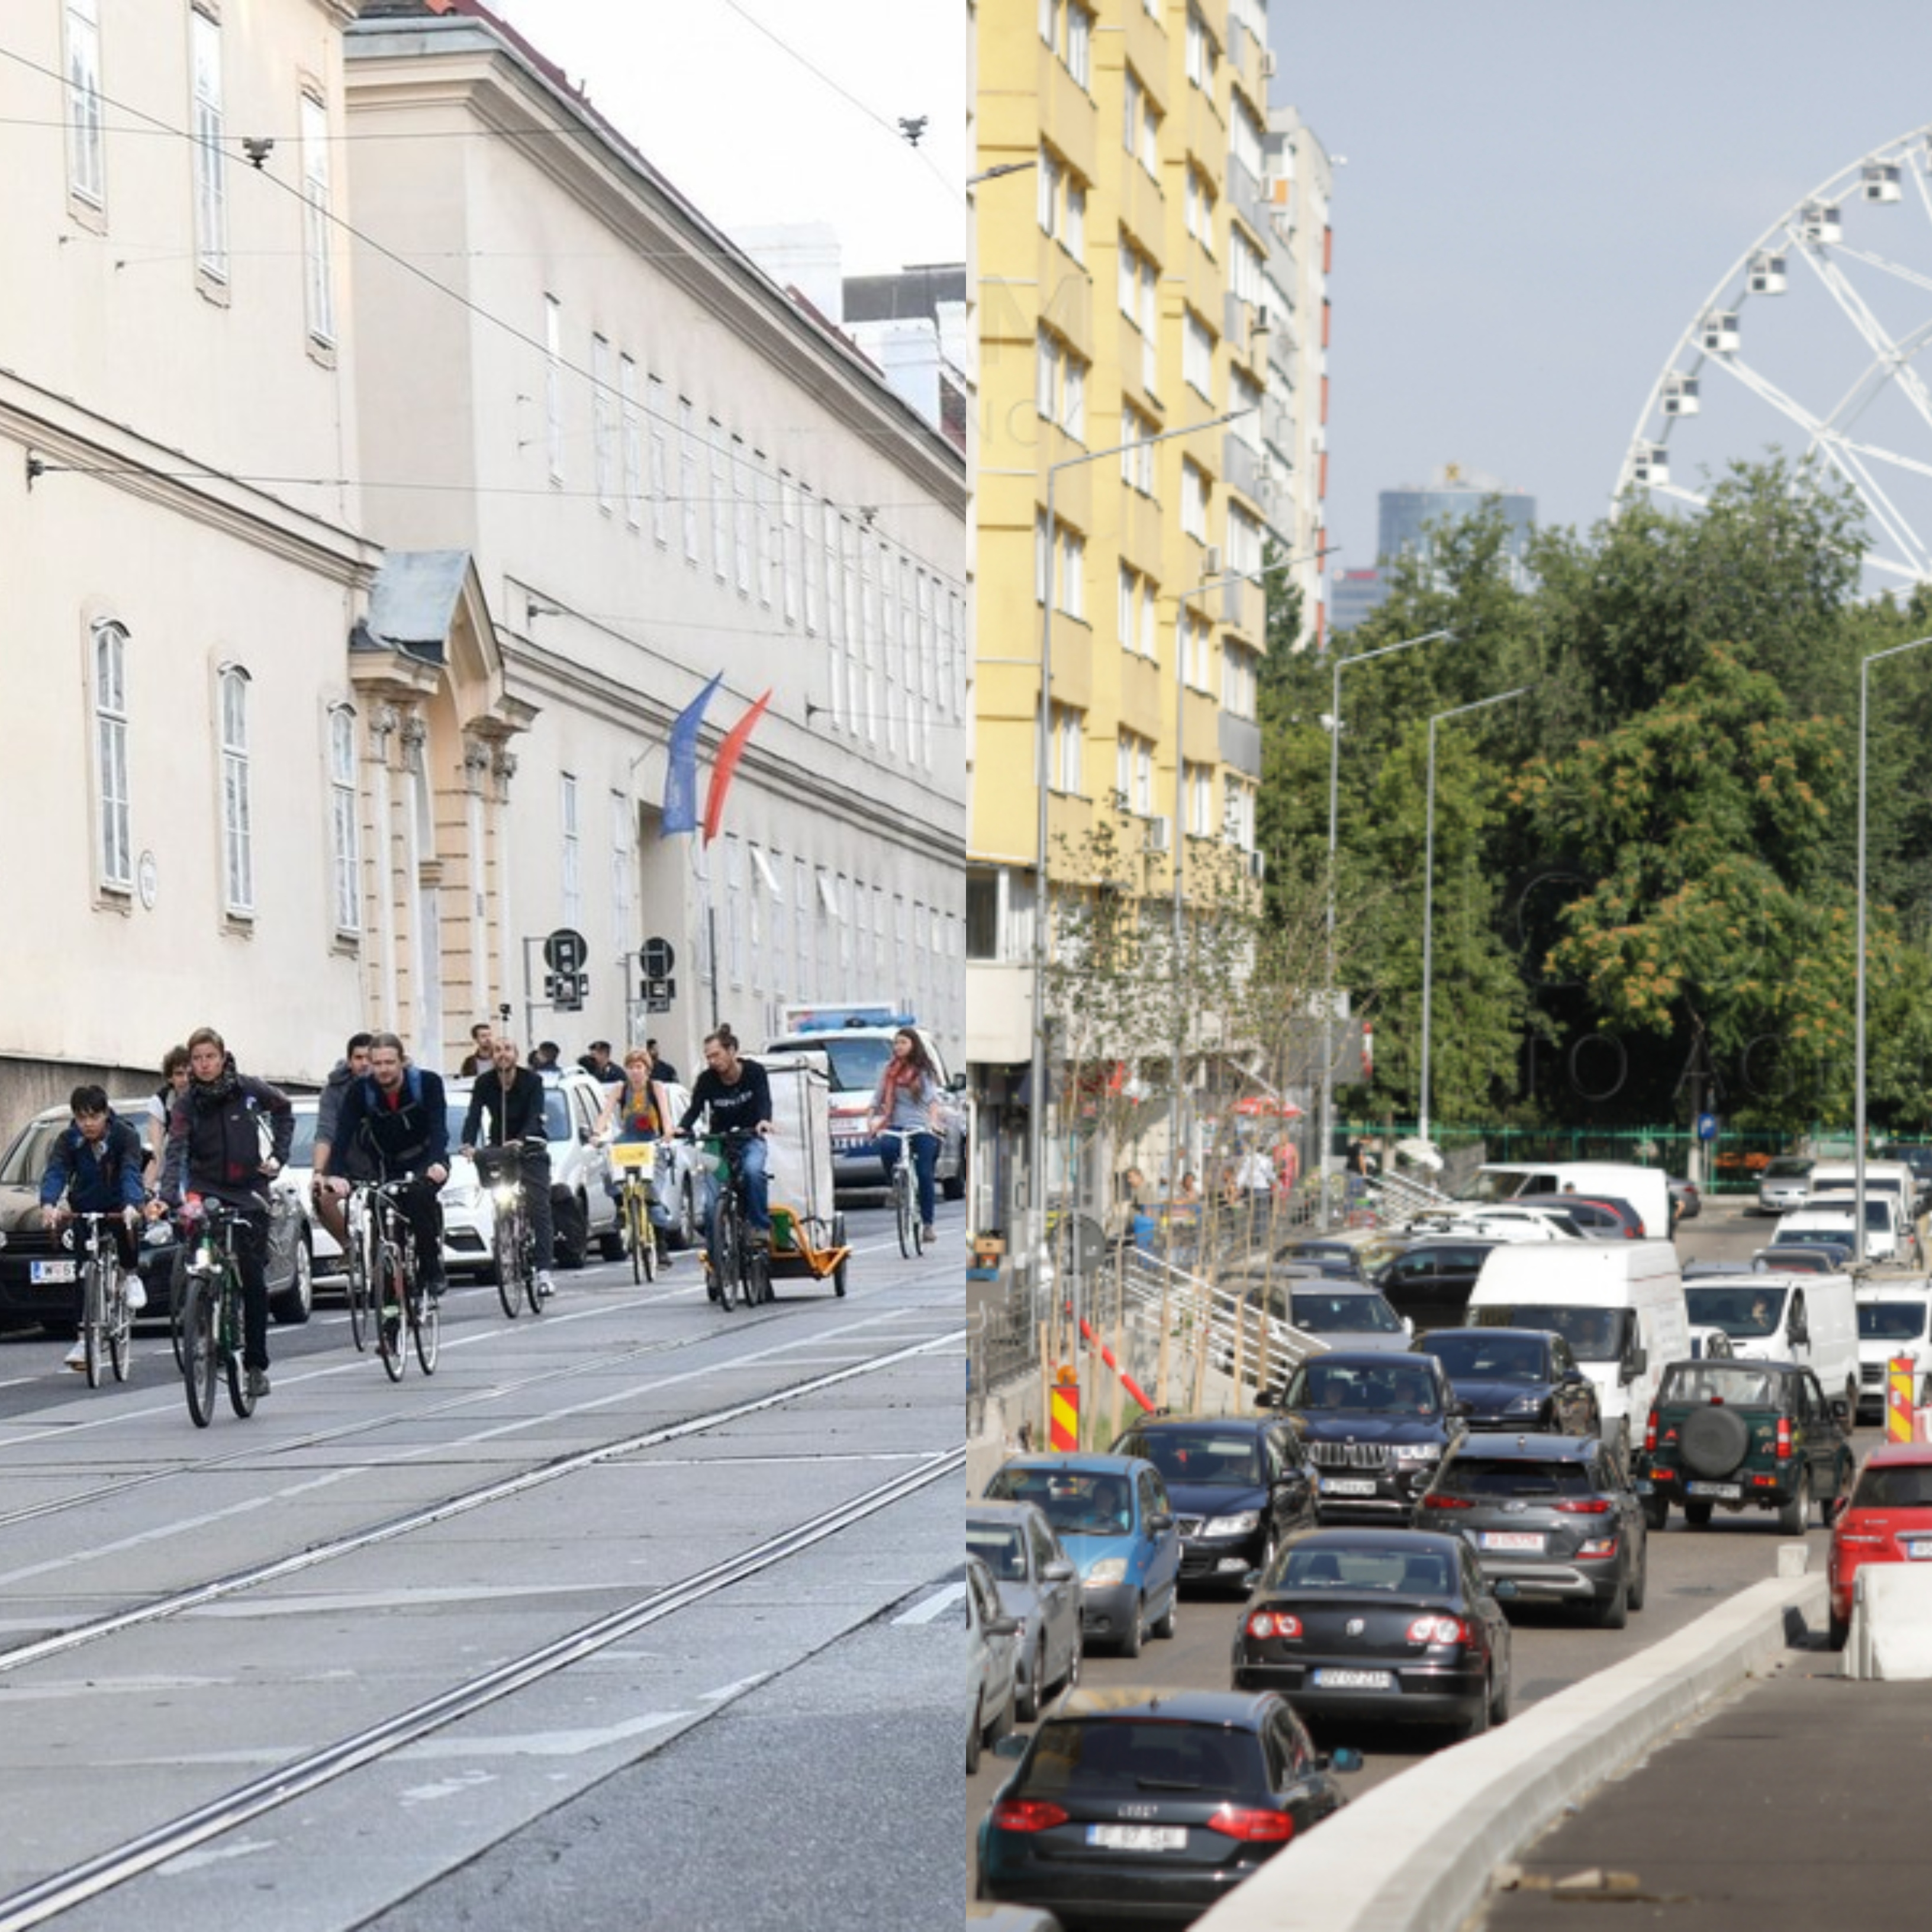 Viena redevine cel mai bun oraș din lume. București și Kiev, excluse din clasament